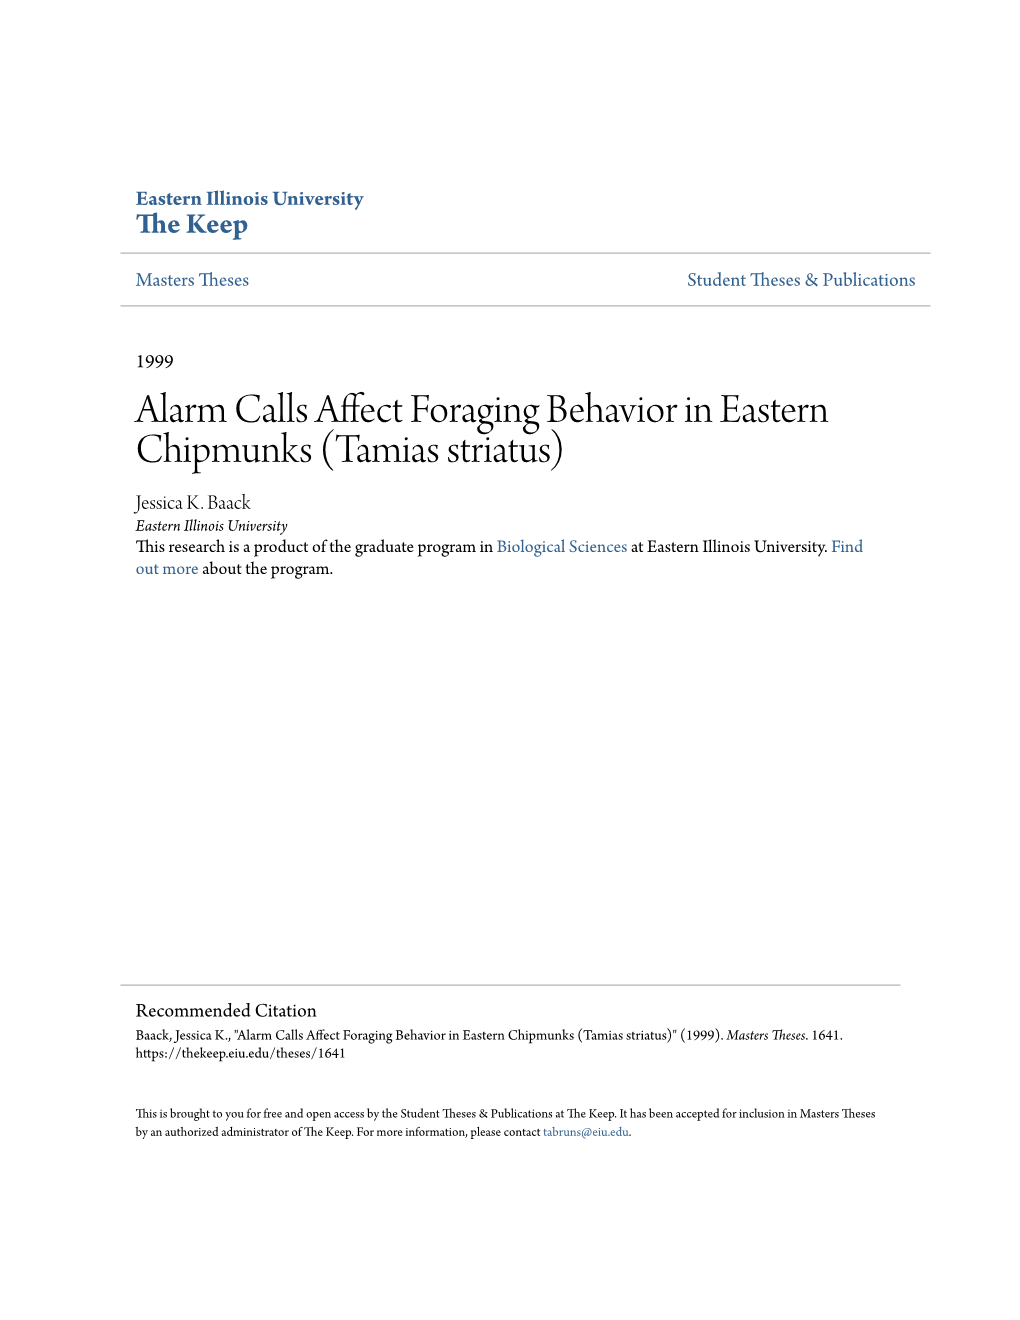 Alarm Calls Affect Foraging Behavior in Eastern Chipmunks (Tamias Striatus) Jessica K